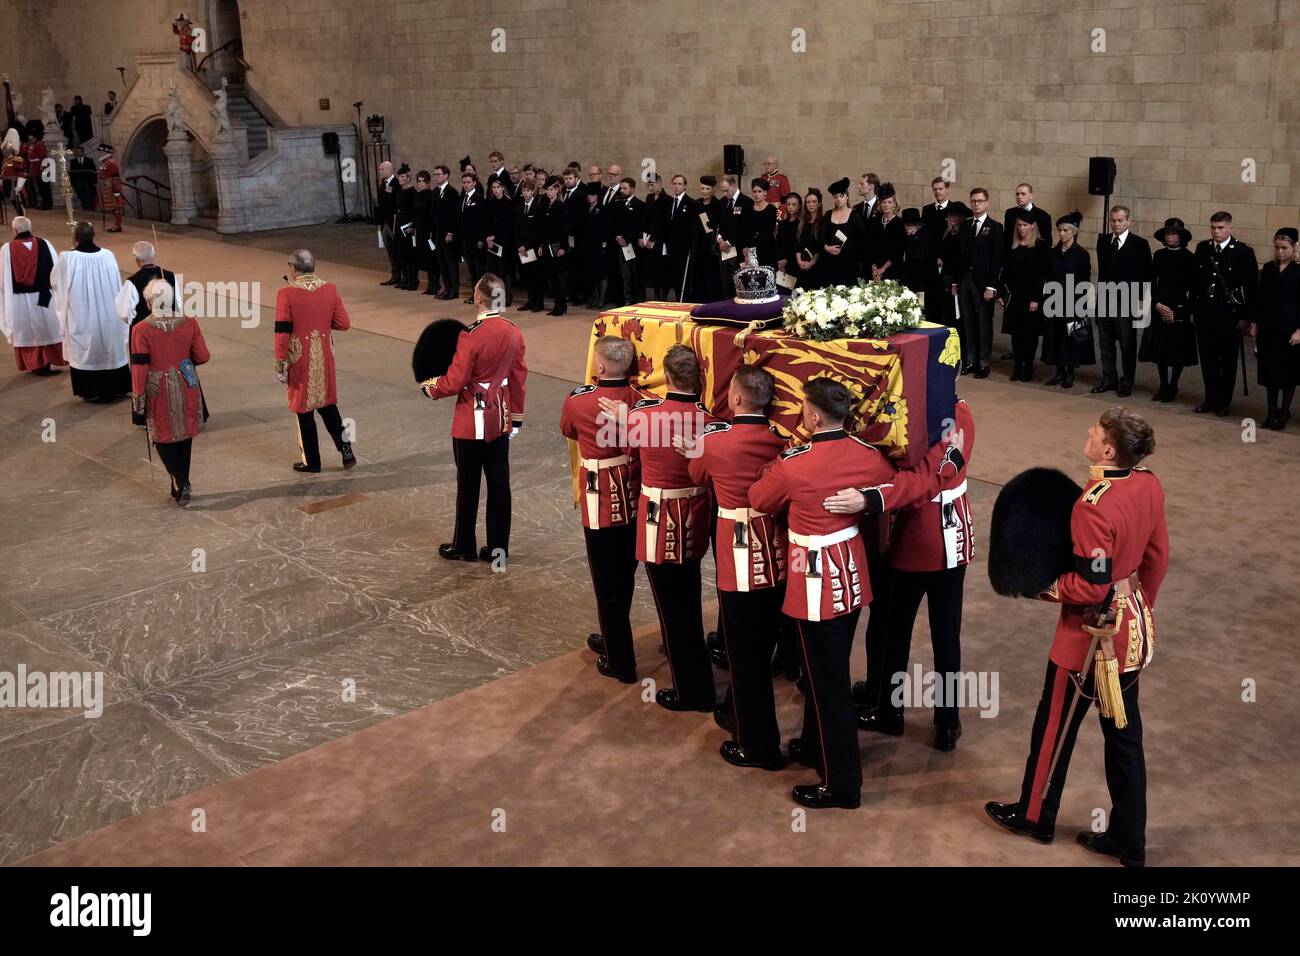 Die Trägerin trägt den Sarg von Königin Elizabeth II. In die Westminster Hall, London, wo er vor ihrer Beerdigung am Montag in einem Zustand liegen wird. Bilddatum: Mittwoch, 14. September 2022. Stockfoto